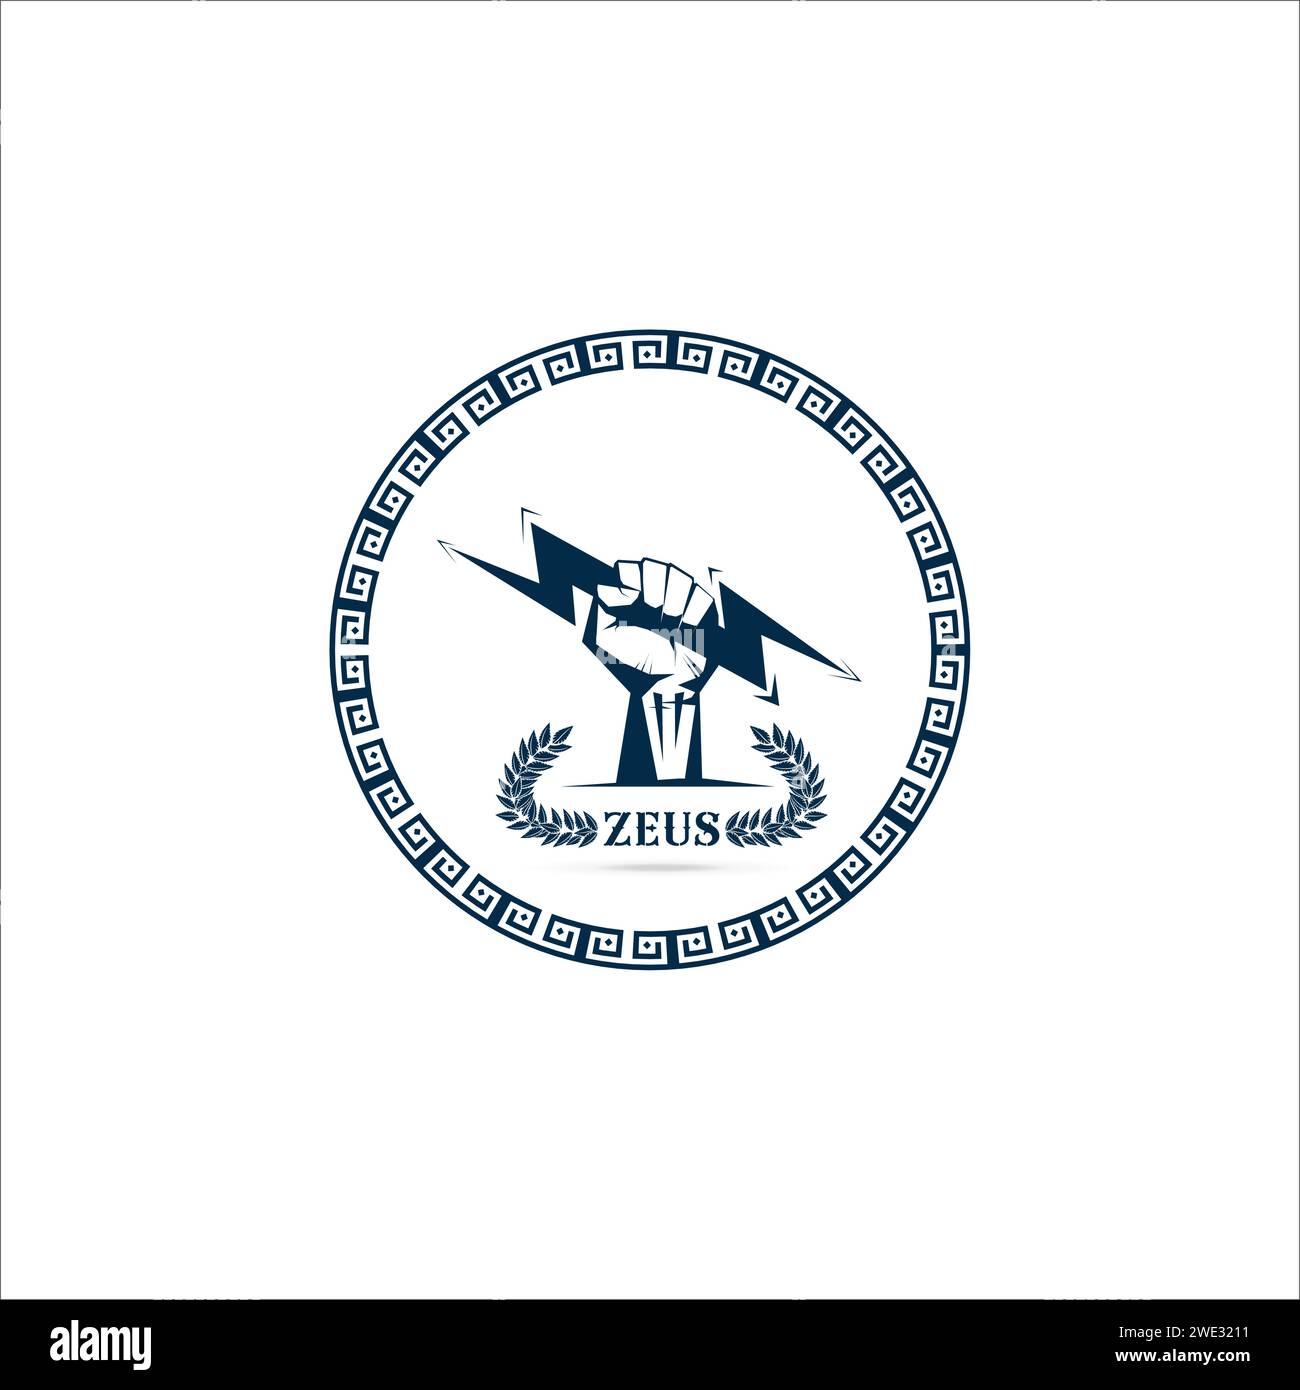 Plantilla de logotipo Mano del puño sosteniendo el trueno aislado con la rama de olivo con el símbolo del trueno del dios griego zeus en el fondo blanco Ilustración vectorial Ilustración del Vector